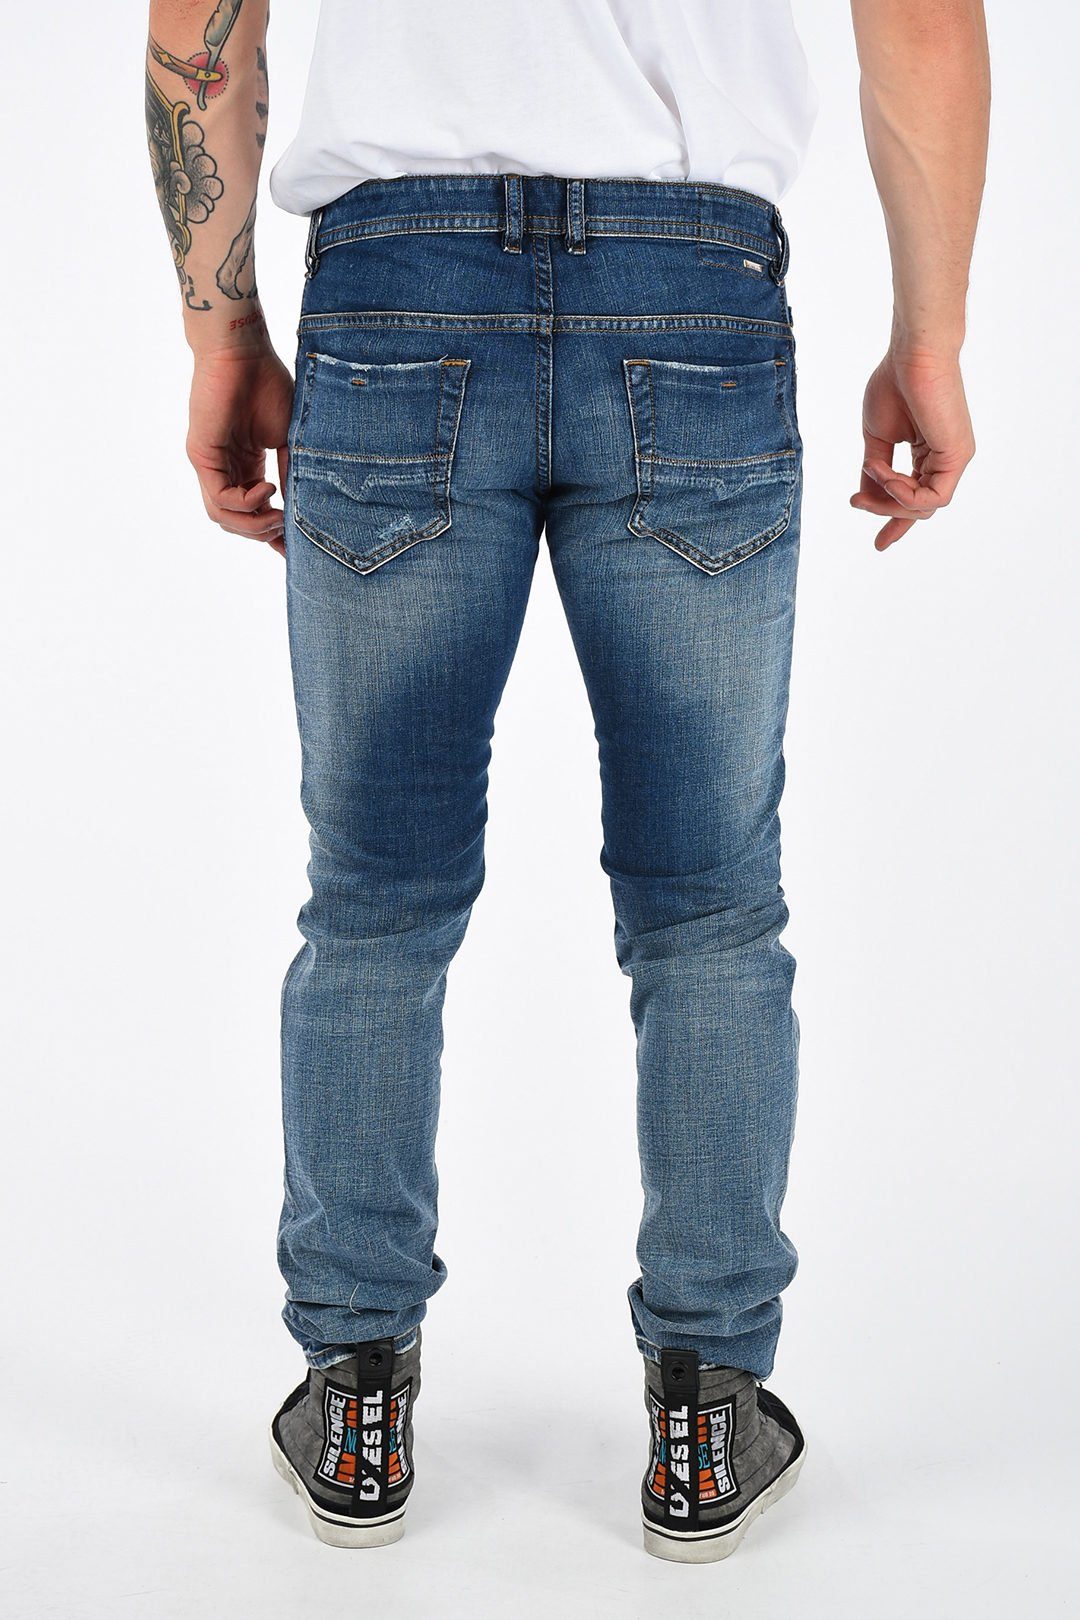 084TW Herren Slim-fit-Jeans Stretch, Used-Look, Länge: 5-Pocket-Style, Thommer Blau, Röhrenjeans, Vintage Diesel L32